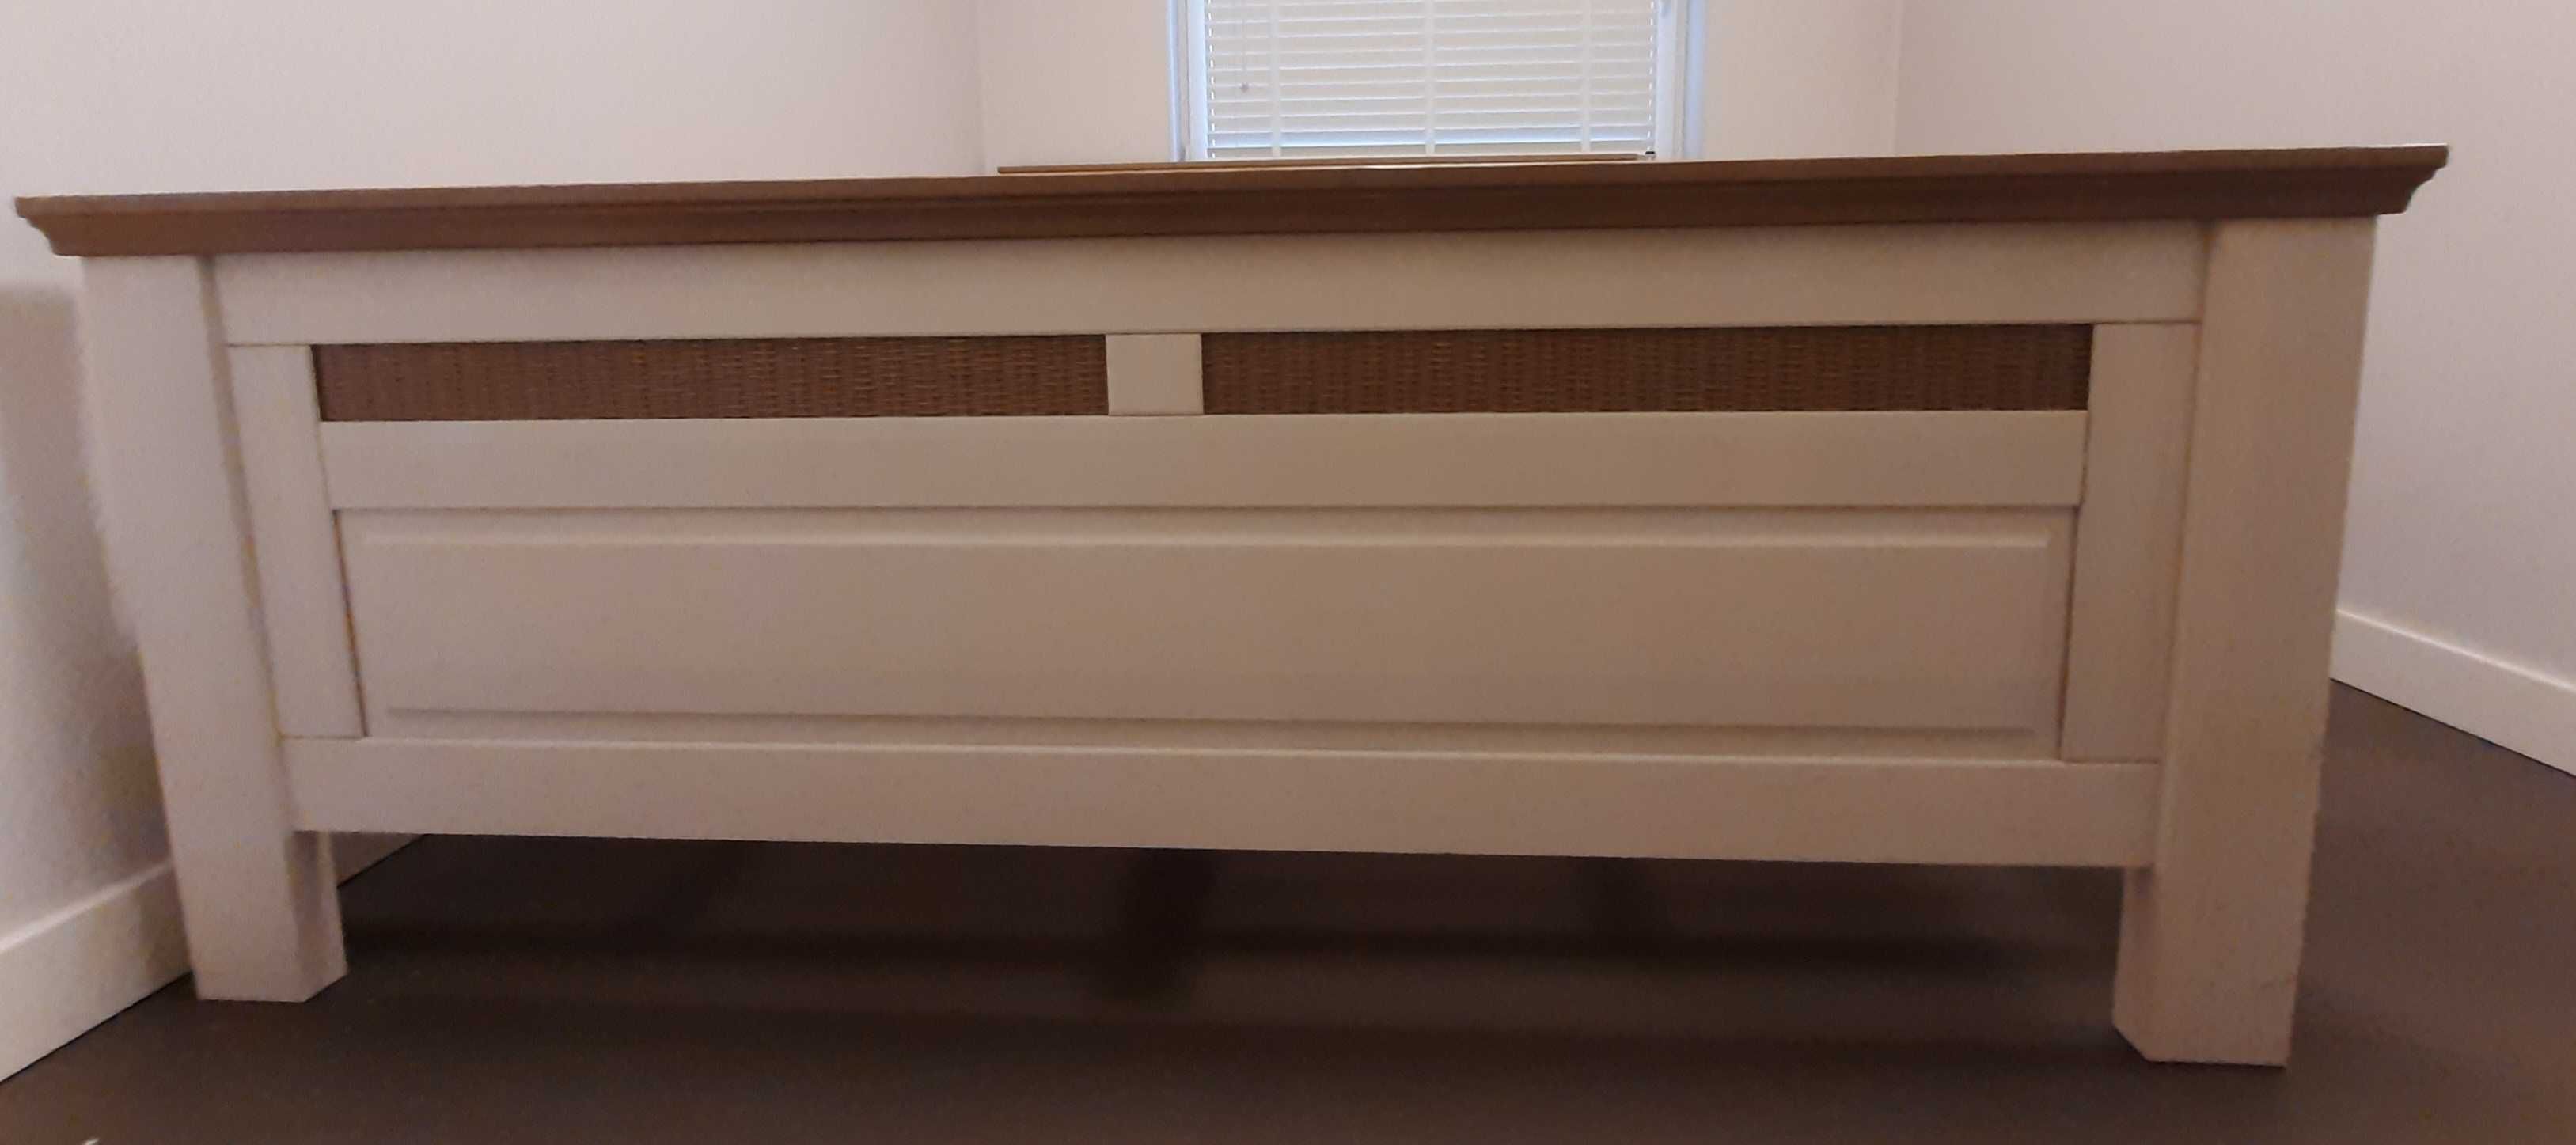 Łóżko i szafka do sypialni w idealnym stanie